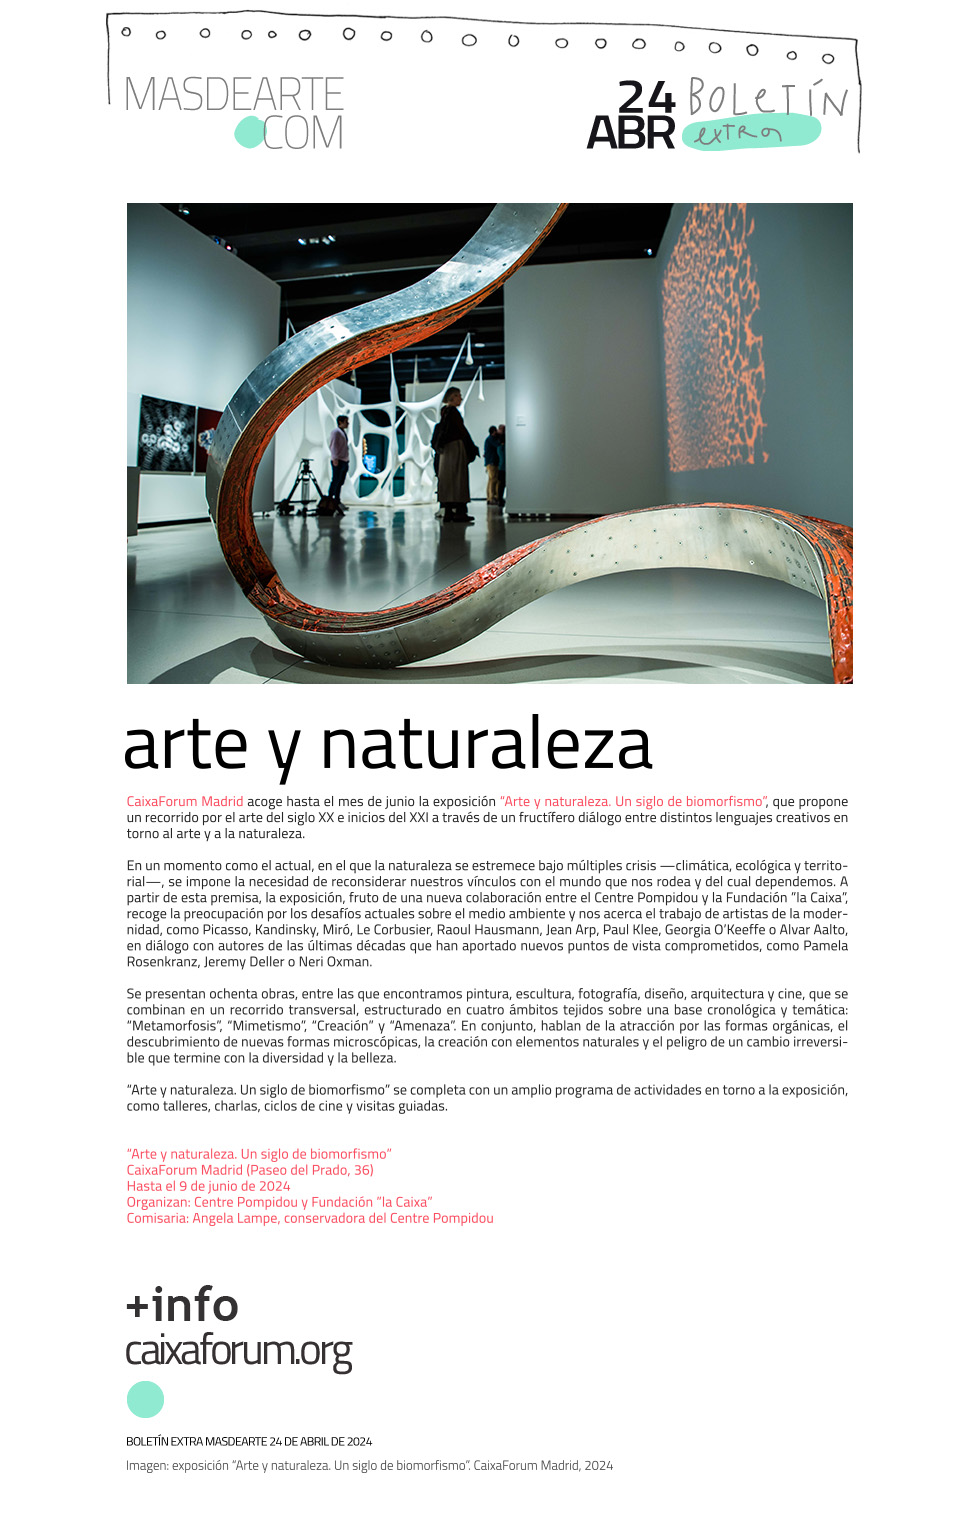 Extra masdearte: CaixaForum Madrid acoge un siglo de arte y naturaleza